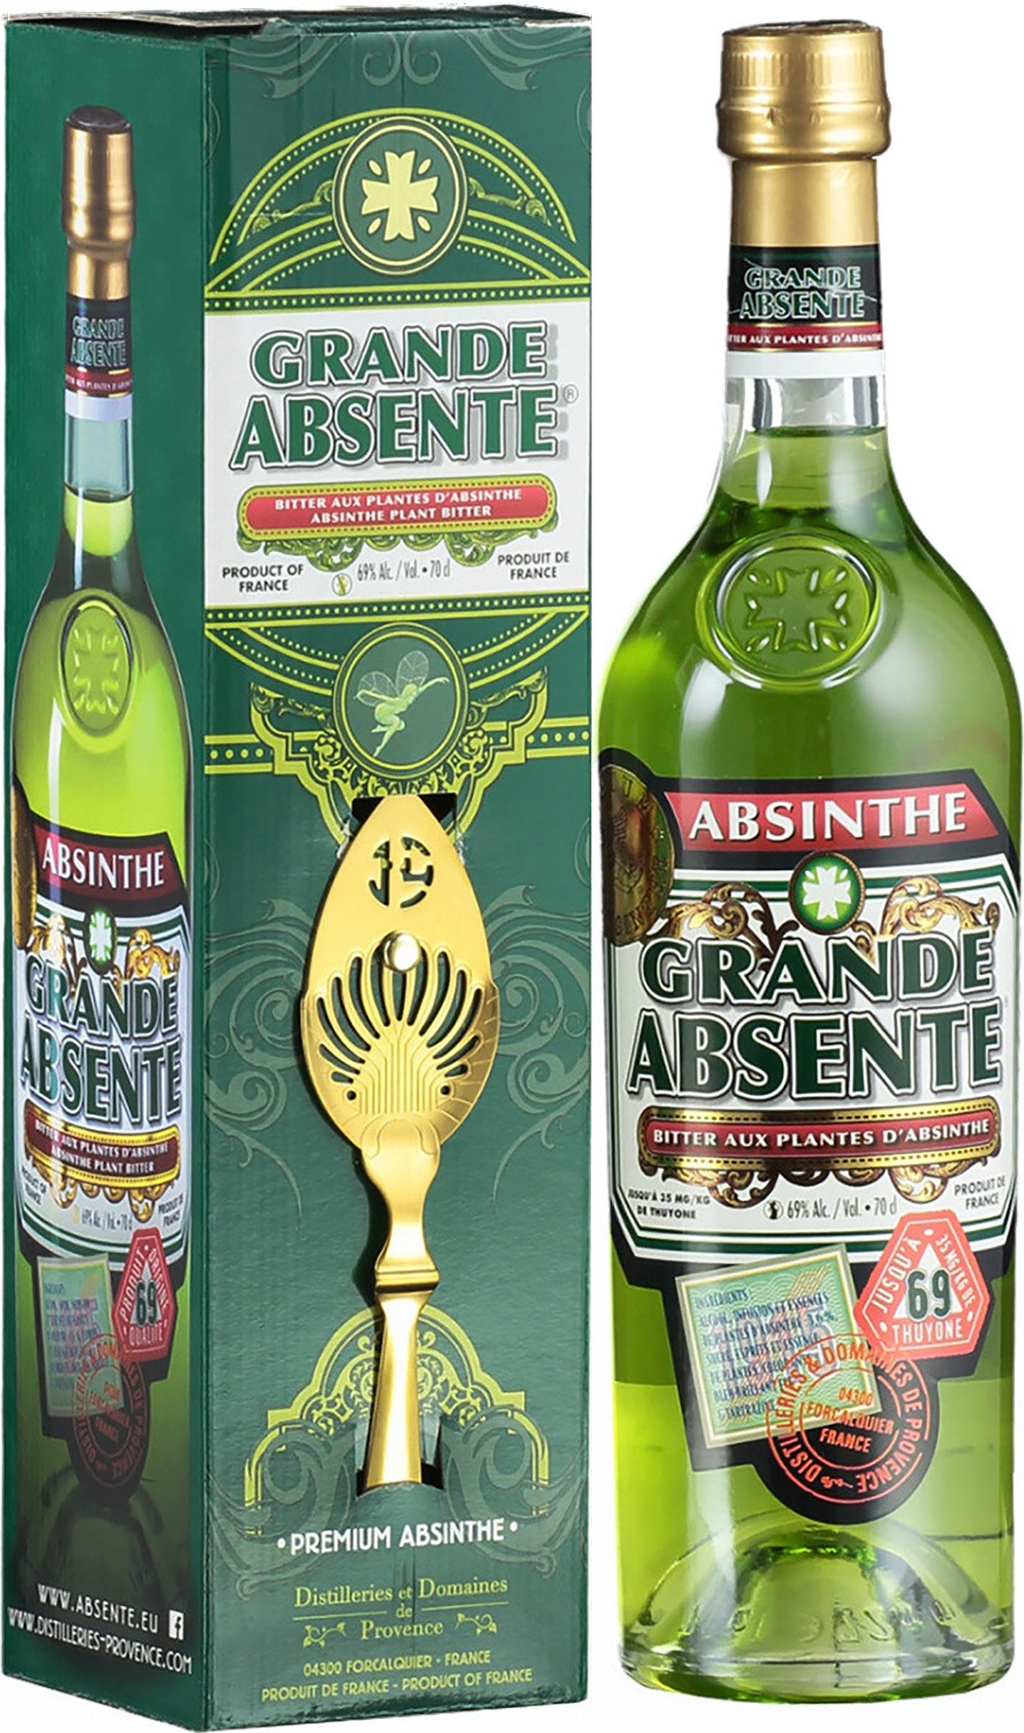 Staroplzenecky Absinth - Bohemian Style Czech Green Absinthe